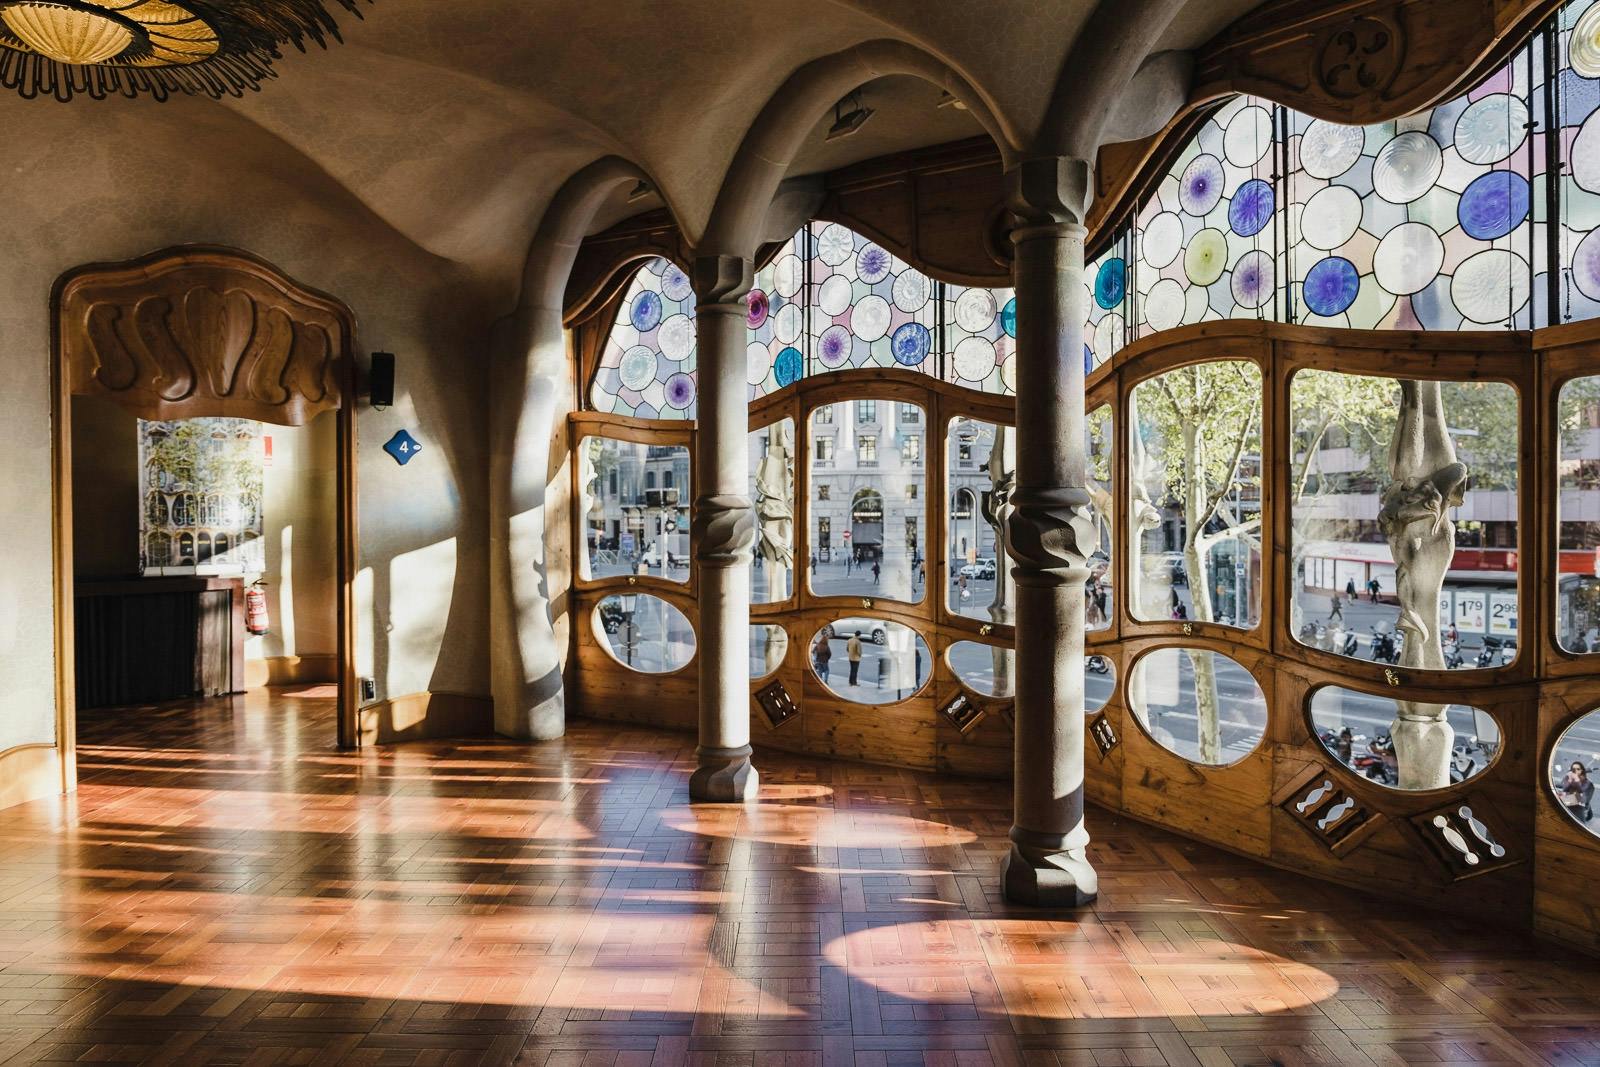 Visita completa sobre Gaudí con Park Güell, Casa Batlló y Sagrada Familia